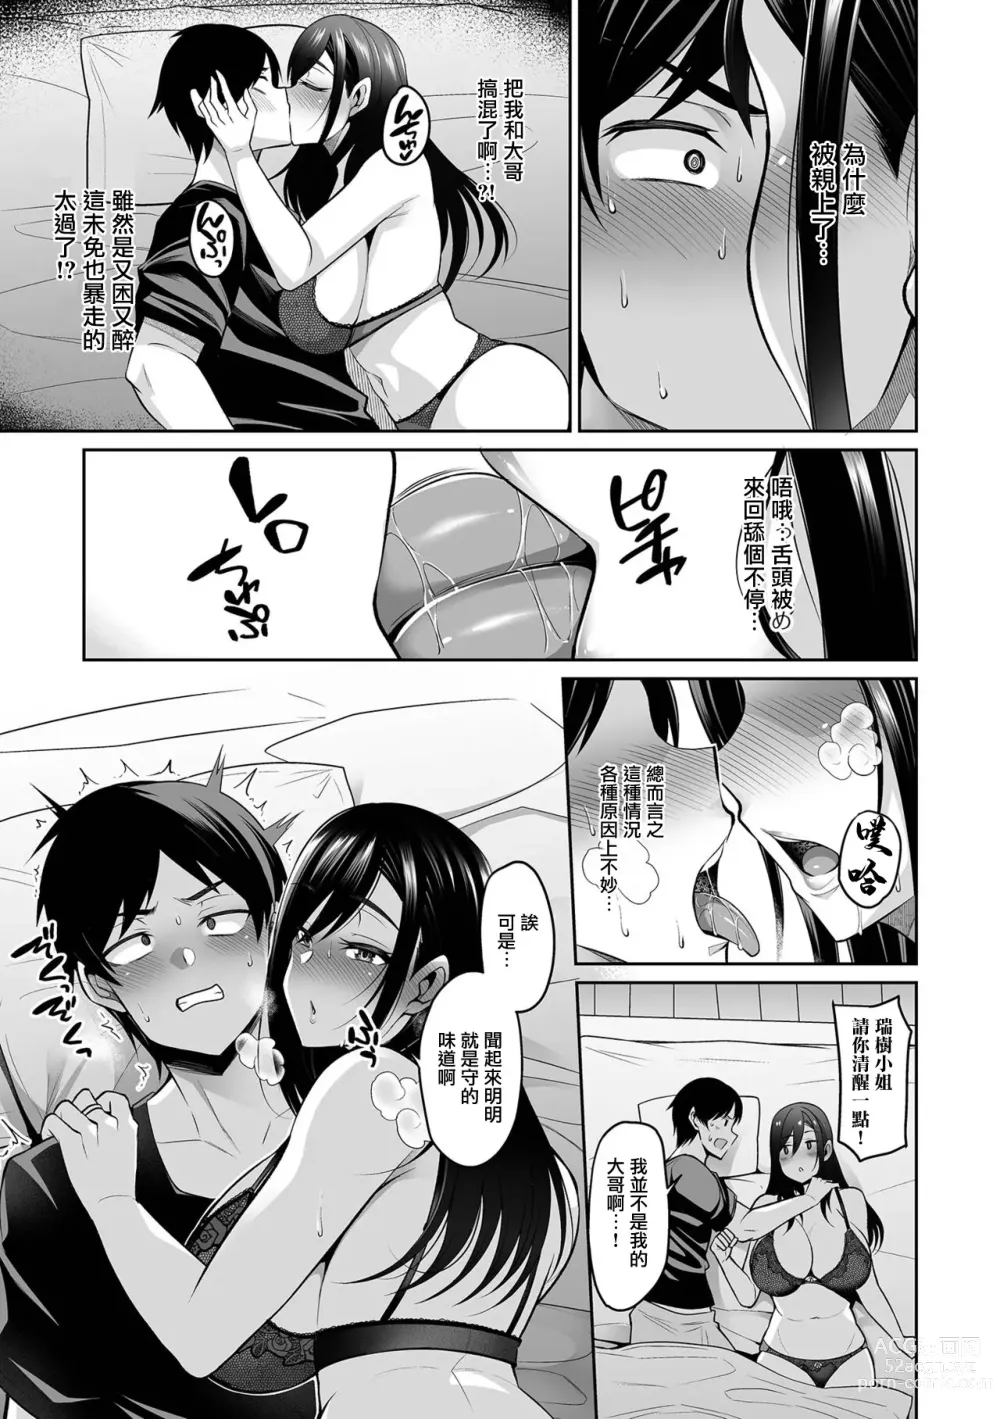 Page 5 of manga NikYobai Aniyome